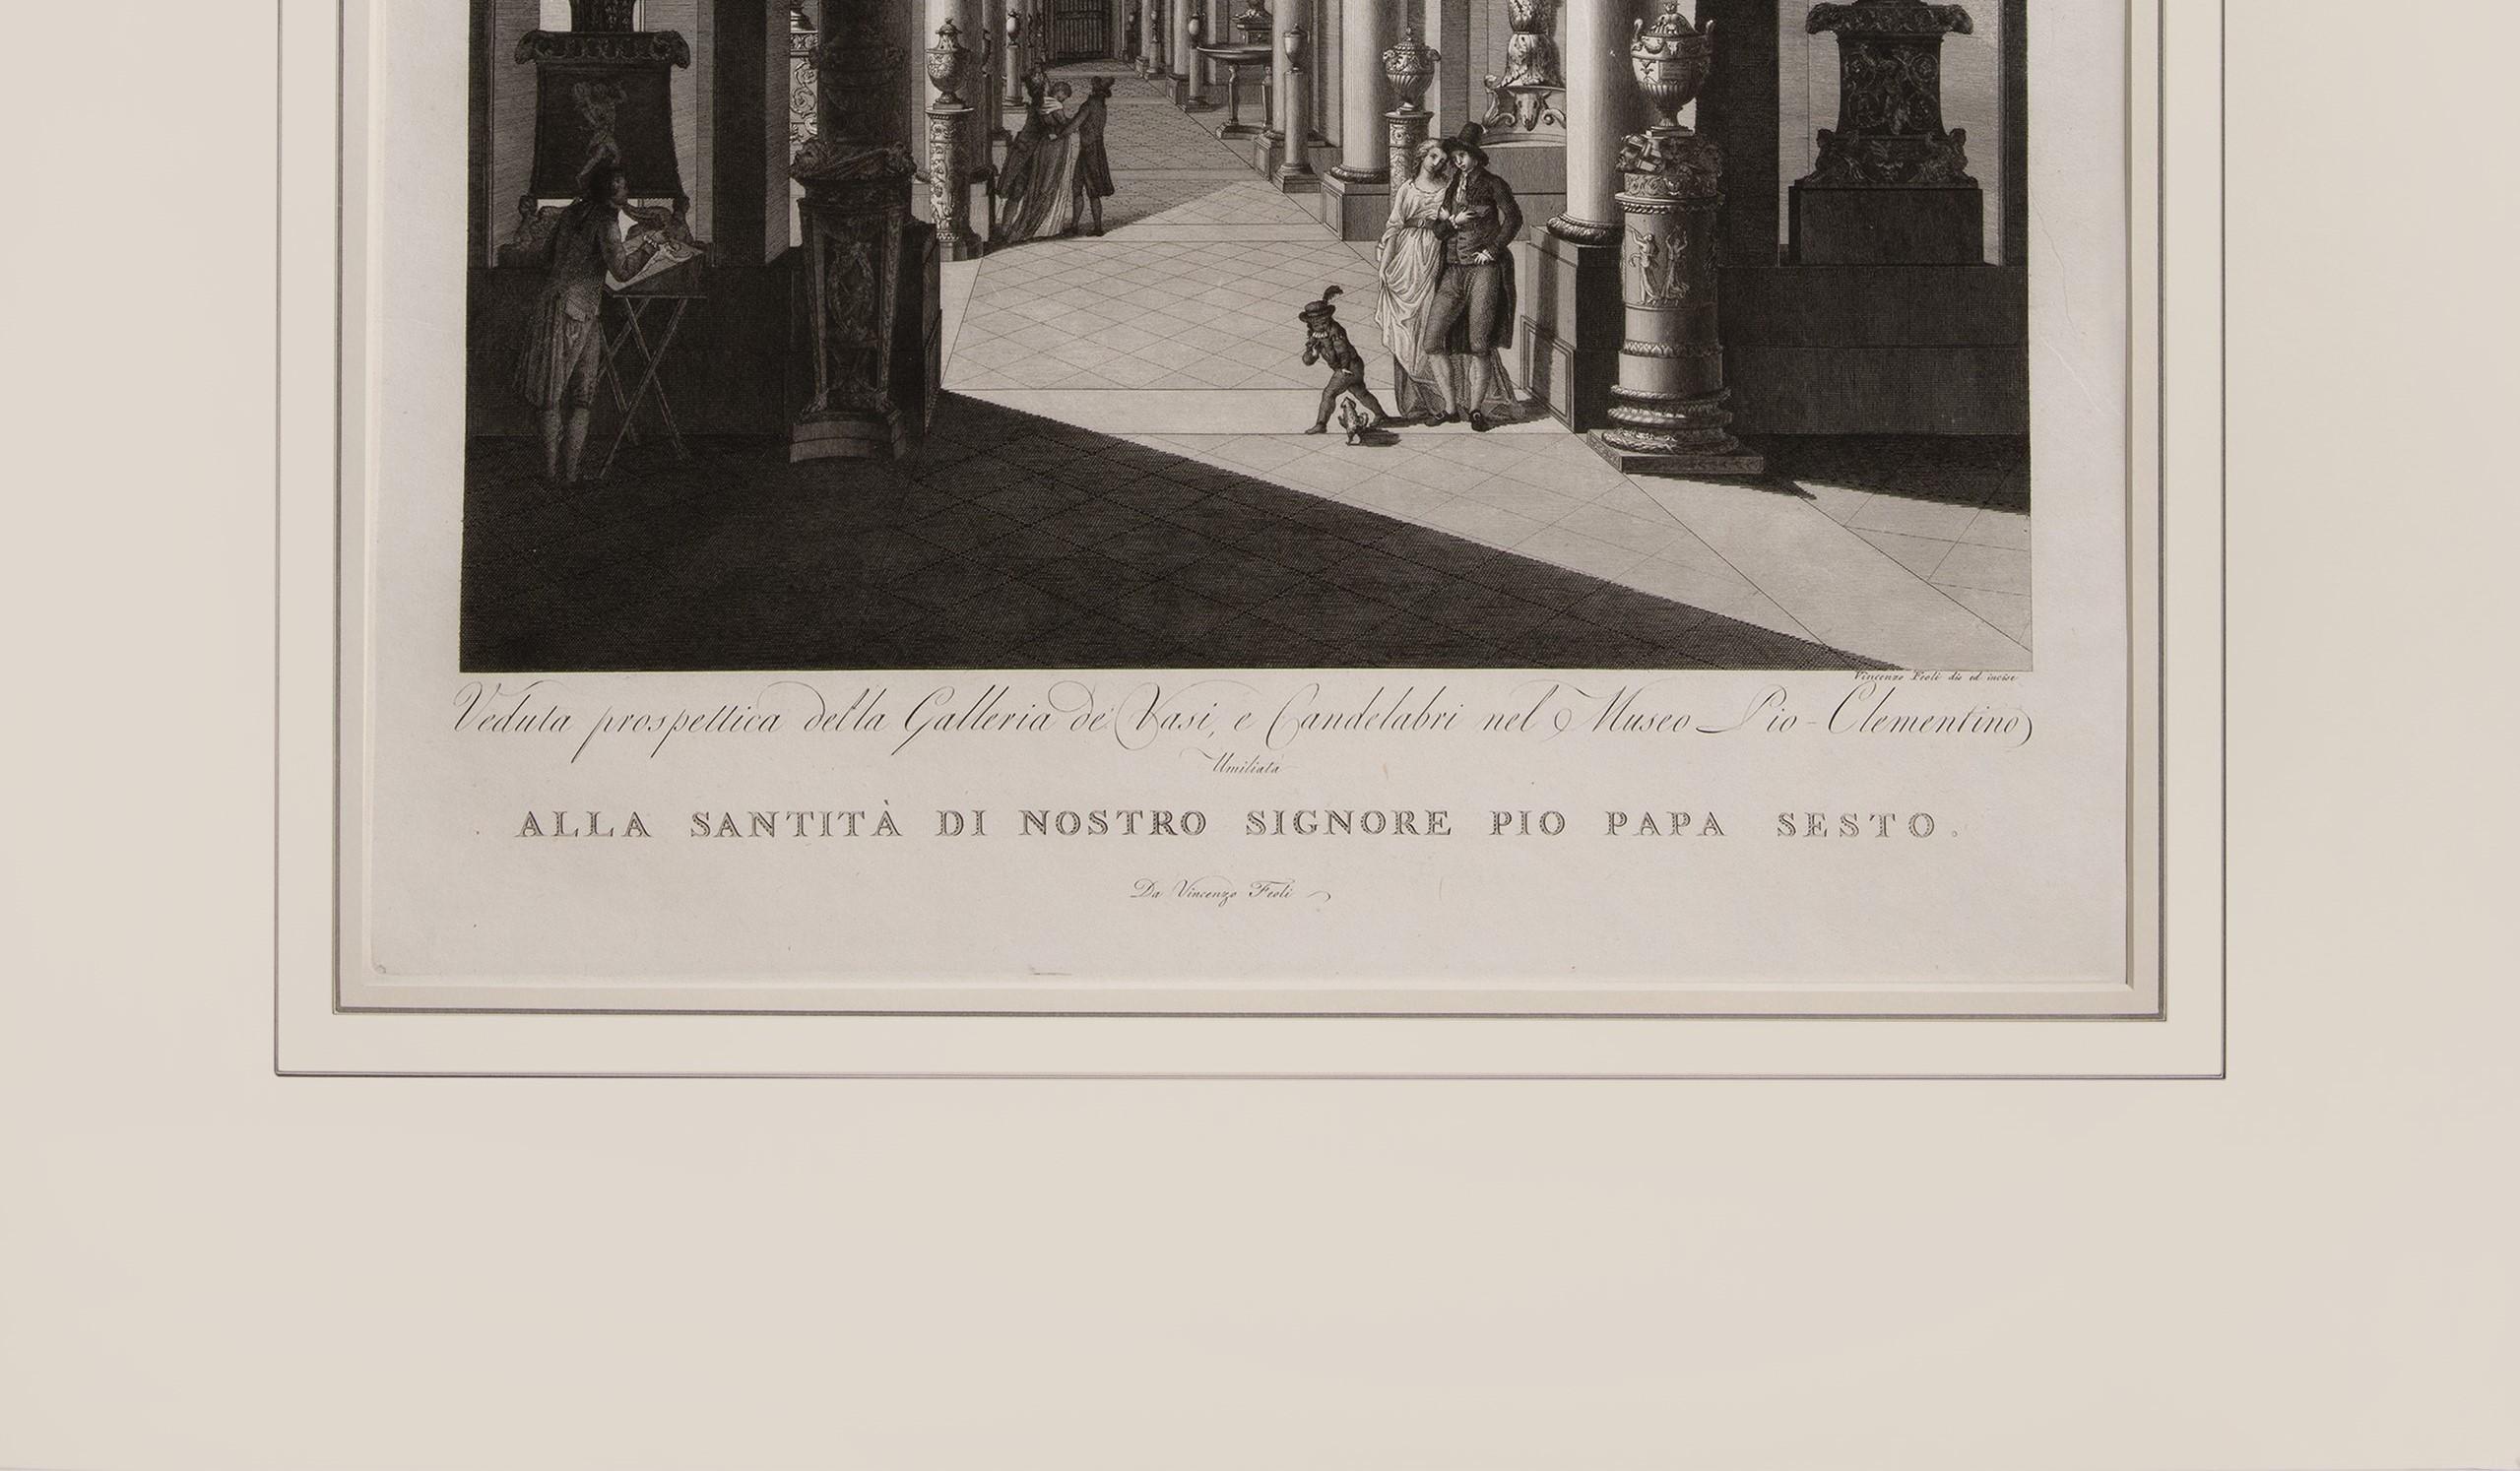 Prchtiger groer Teller, der das Vatikanische Museum illustriert (Beige), Interior Print, von FEOLI, Vincenzo.